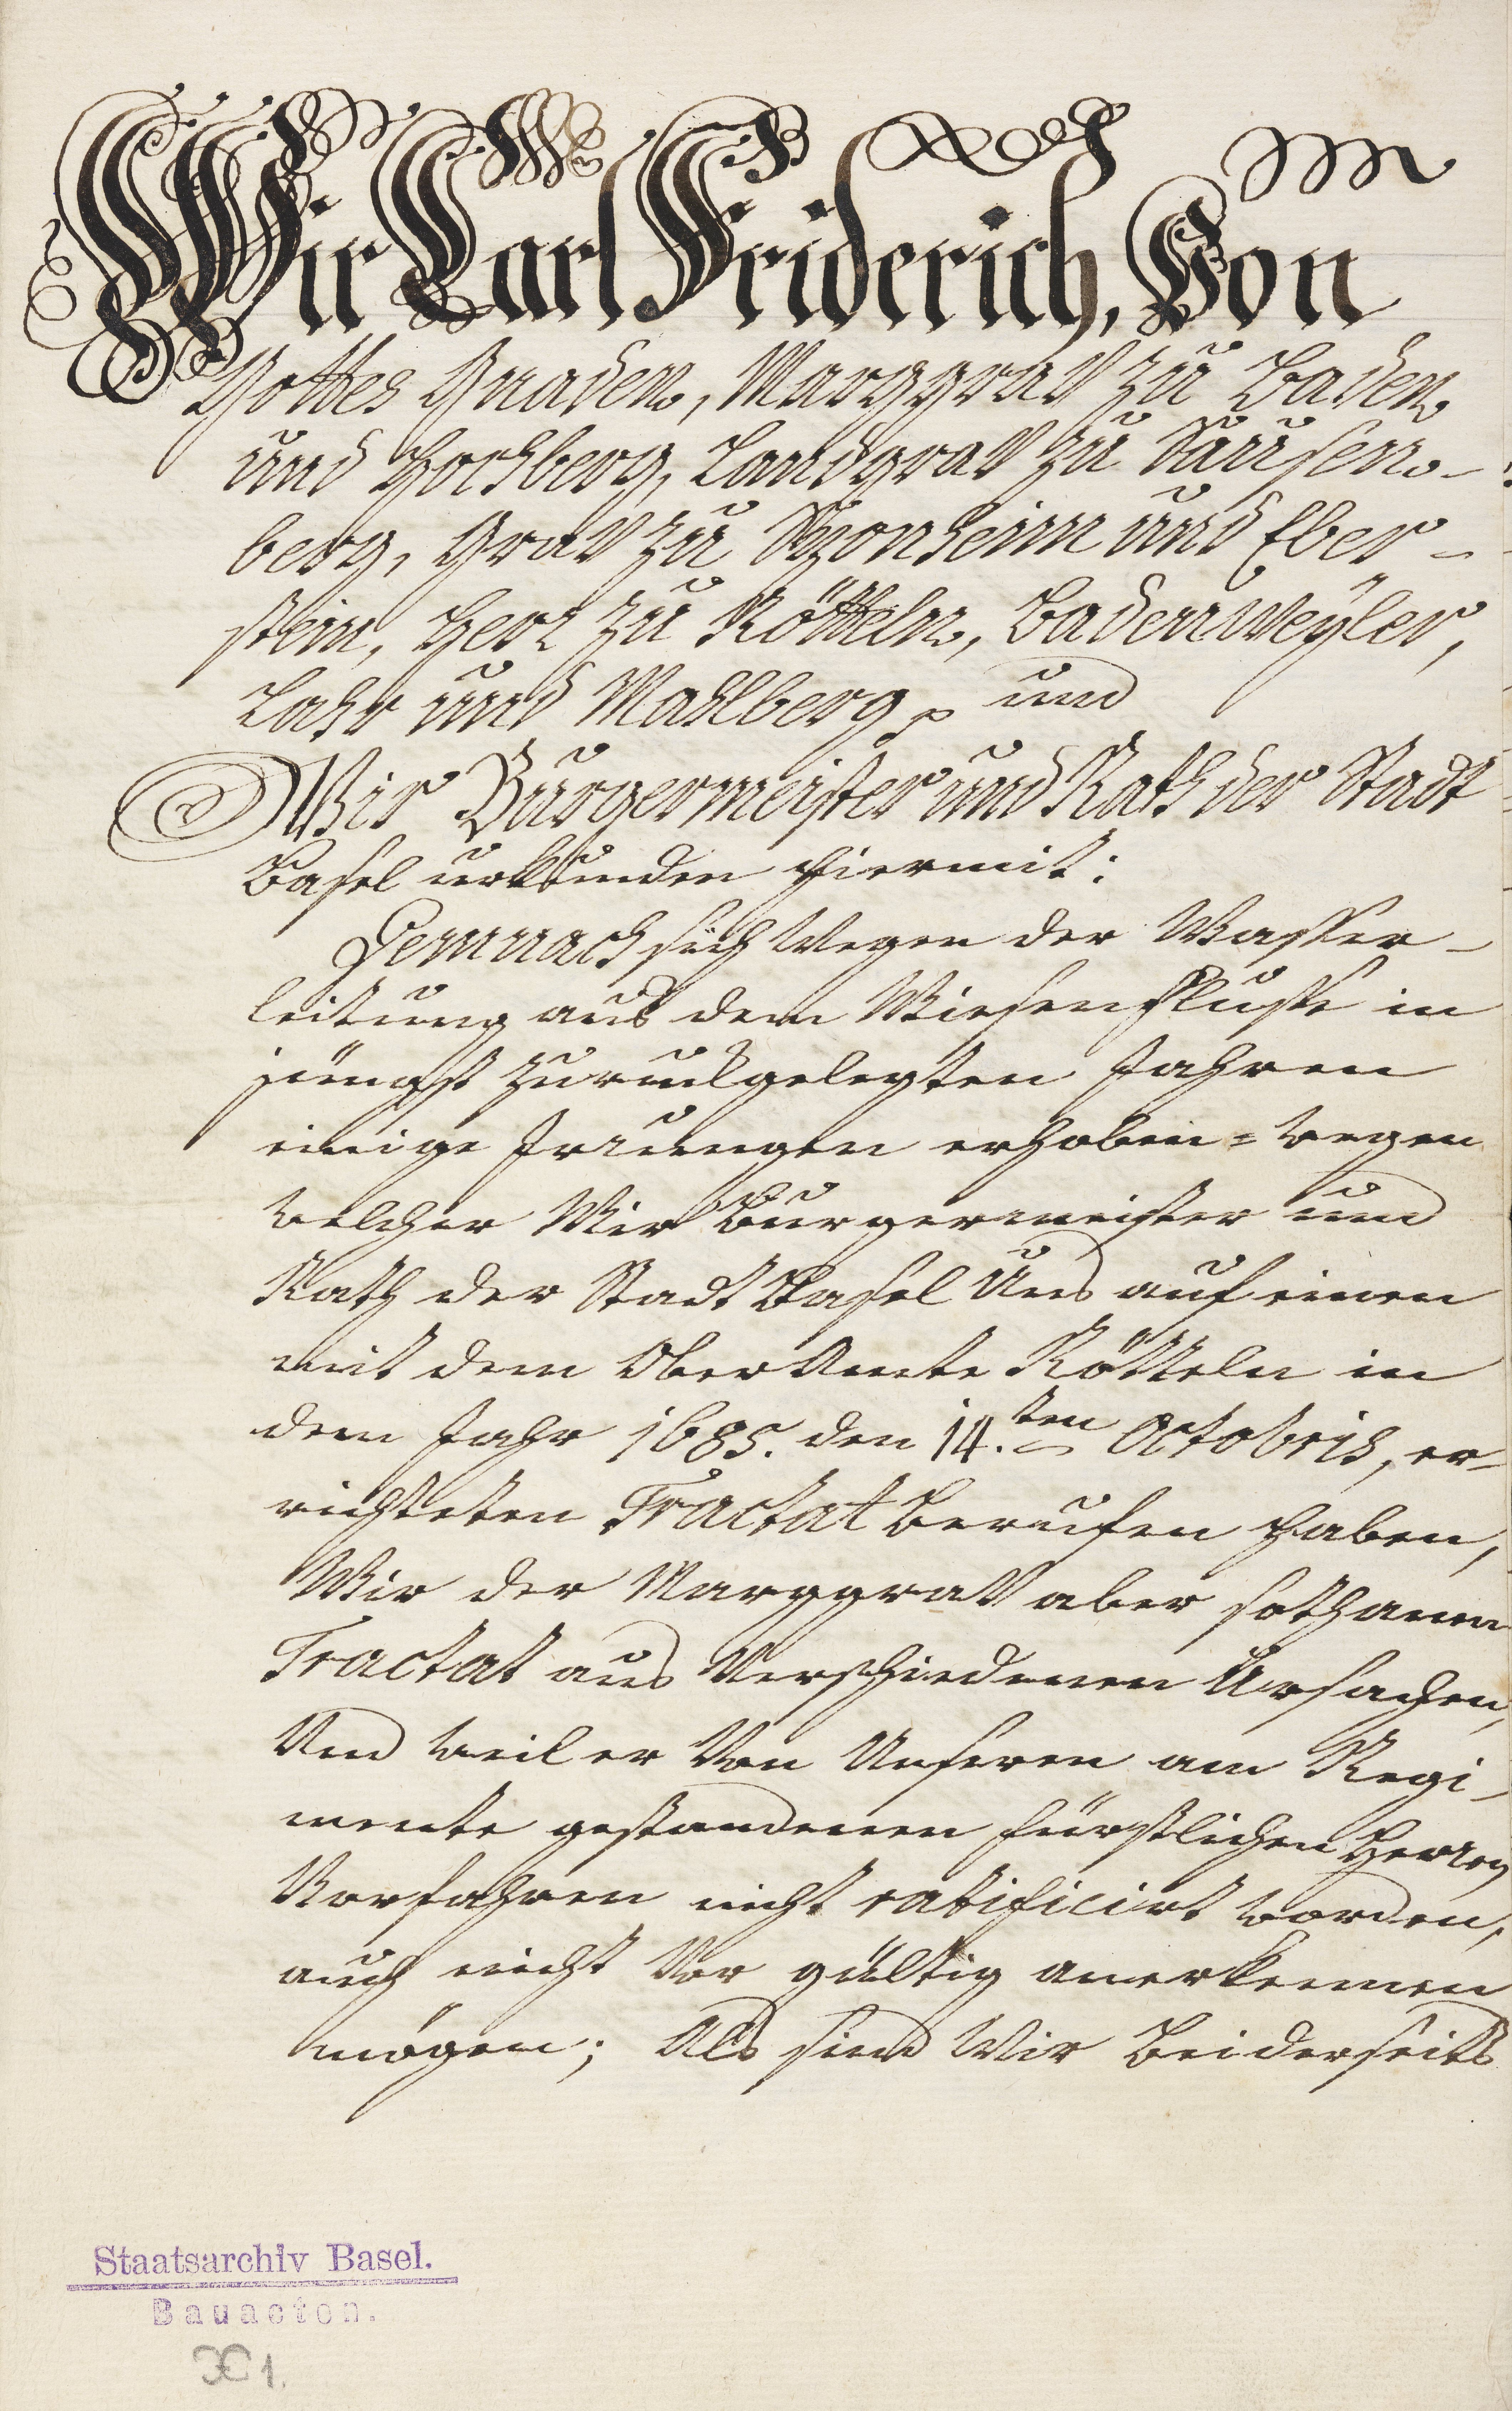 Staatsvertrag Karlfriedrich von Baden